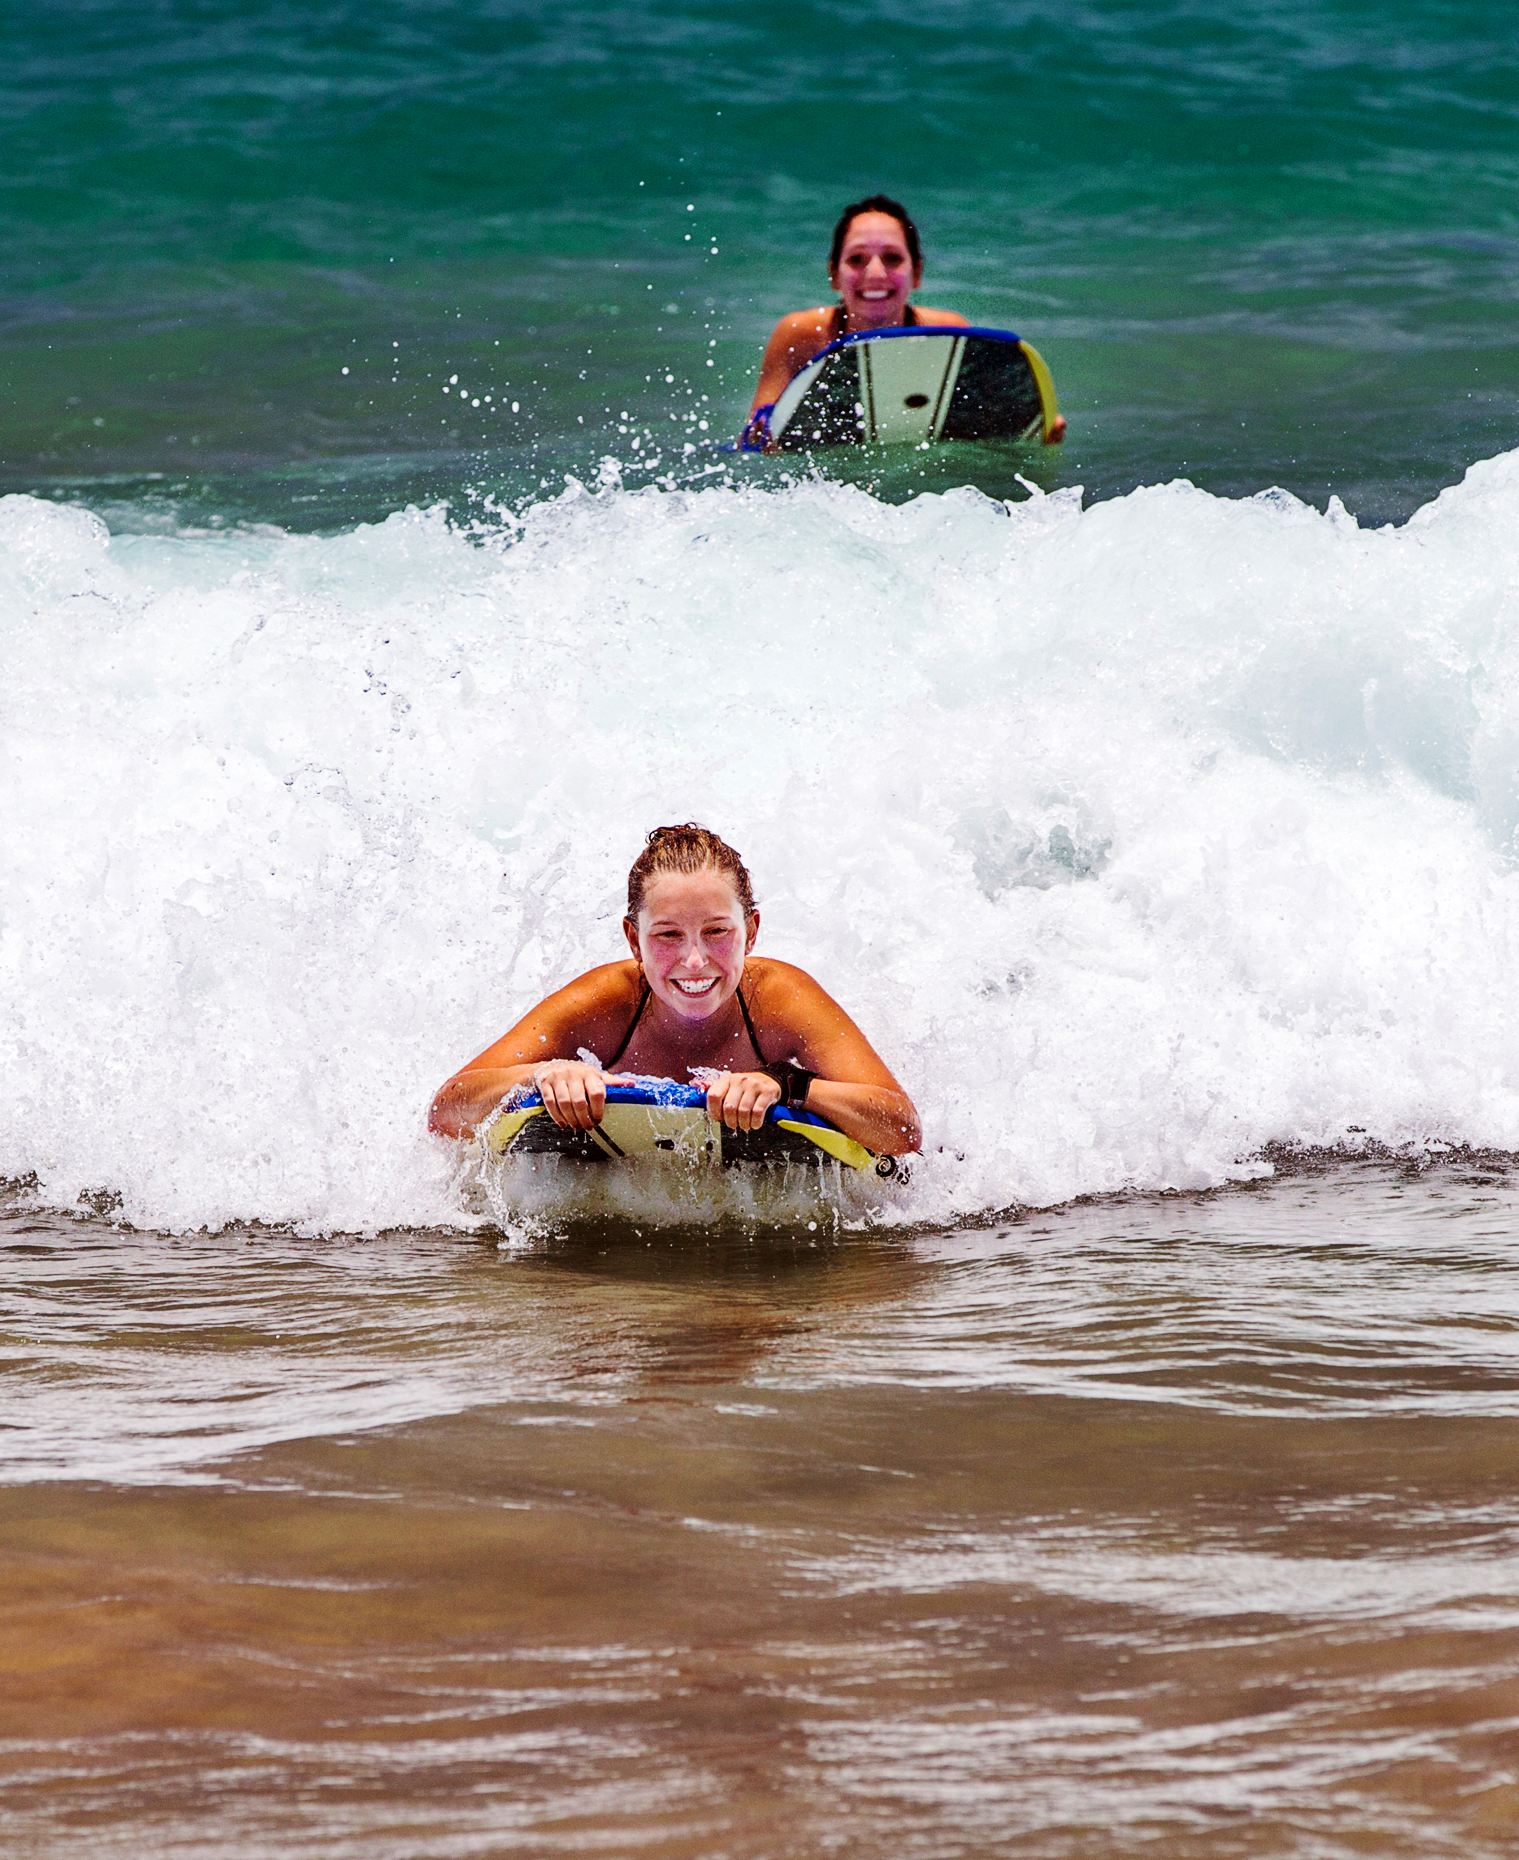 Girls surfing waves, Hapuna Beach, Kohala Coast, Hawai